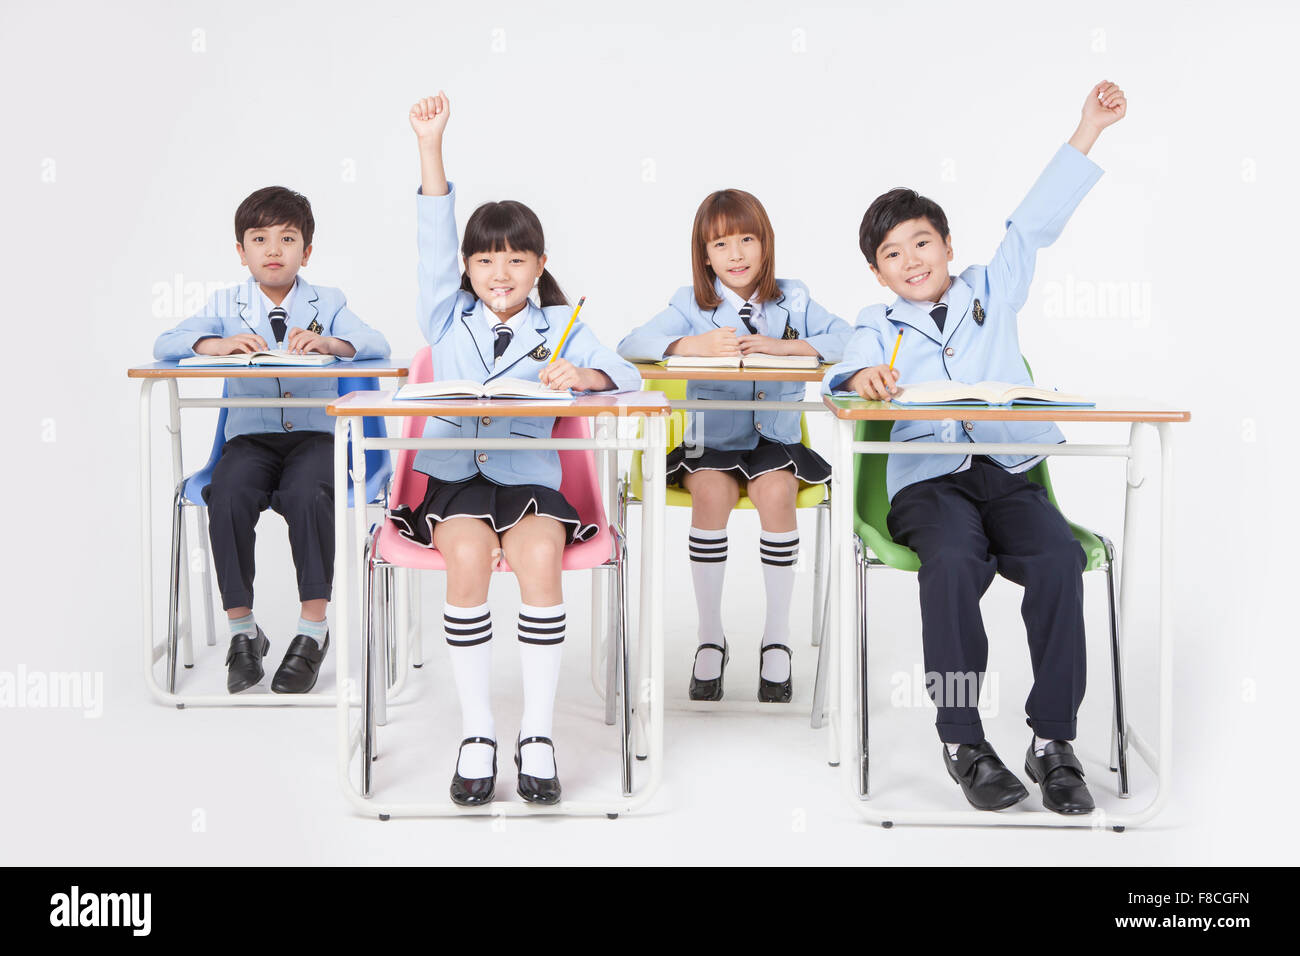 Vier Grundschüler in Schuluniformen sitzen am Schreibtisch studieren mit gelben Bleistifte und starrte nach vorne mit einem Lächeln Stockfoto